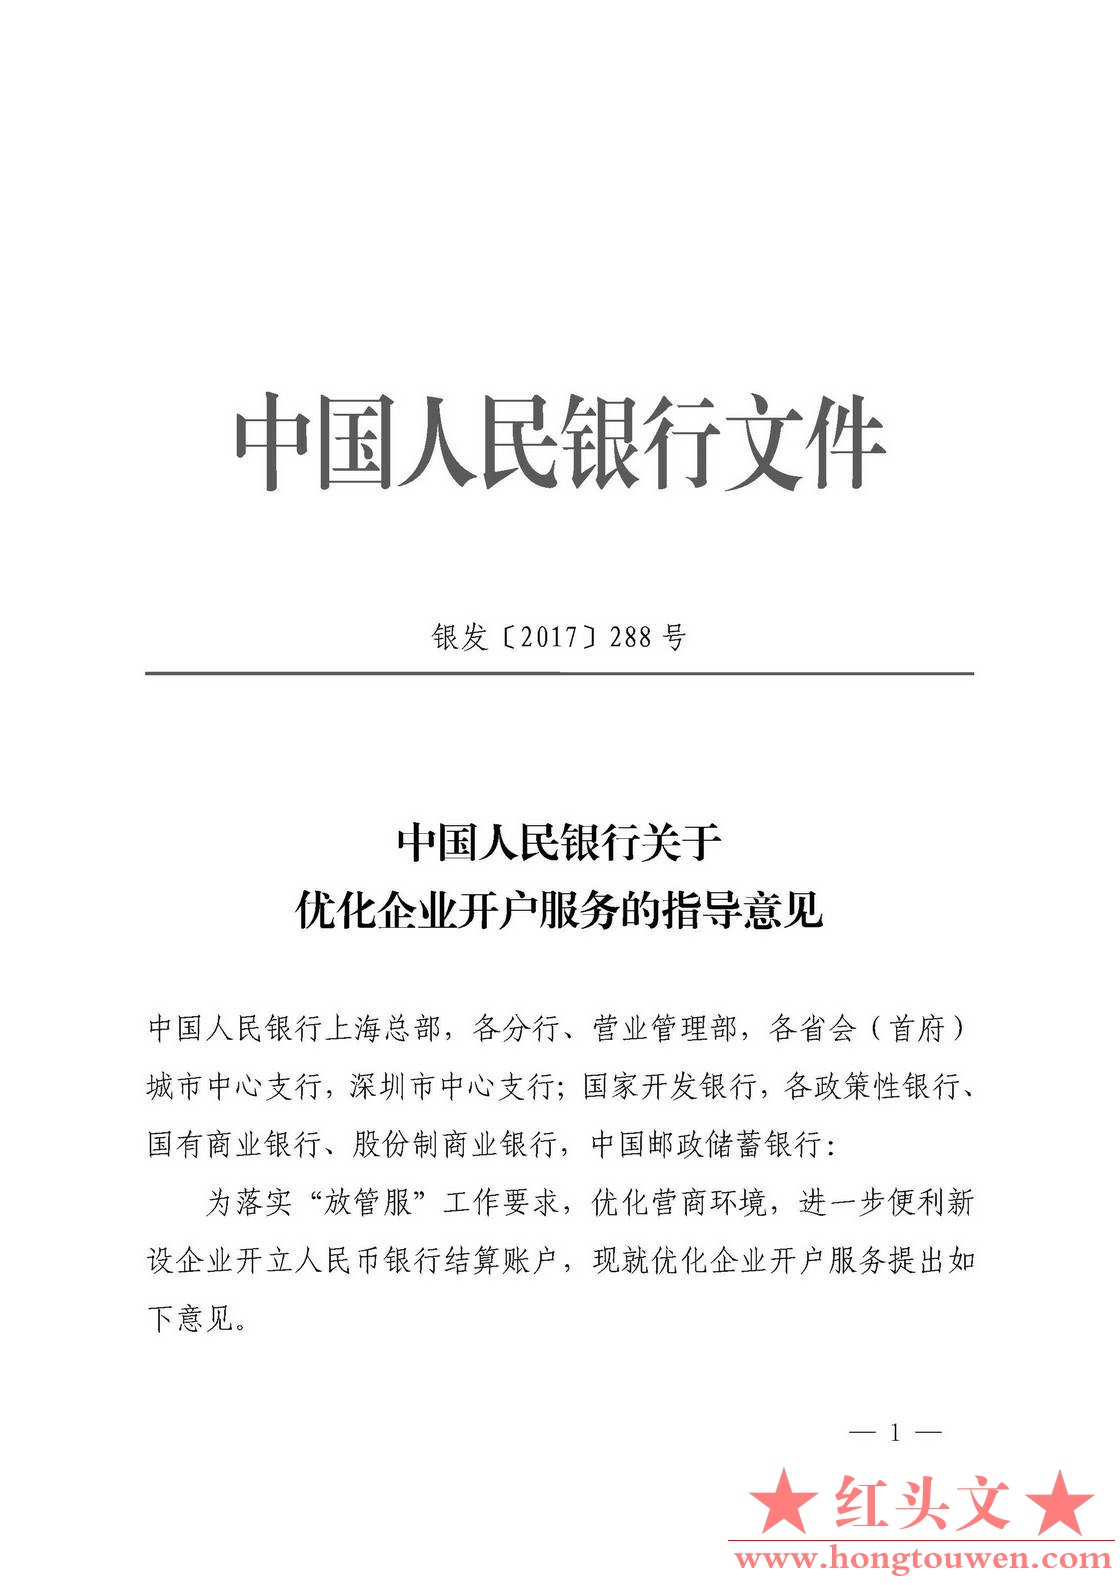 银发[2017]288号-中国人民银行关于优化企业开户服务的指导意见_页面_1.jpg.jpg